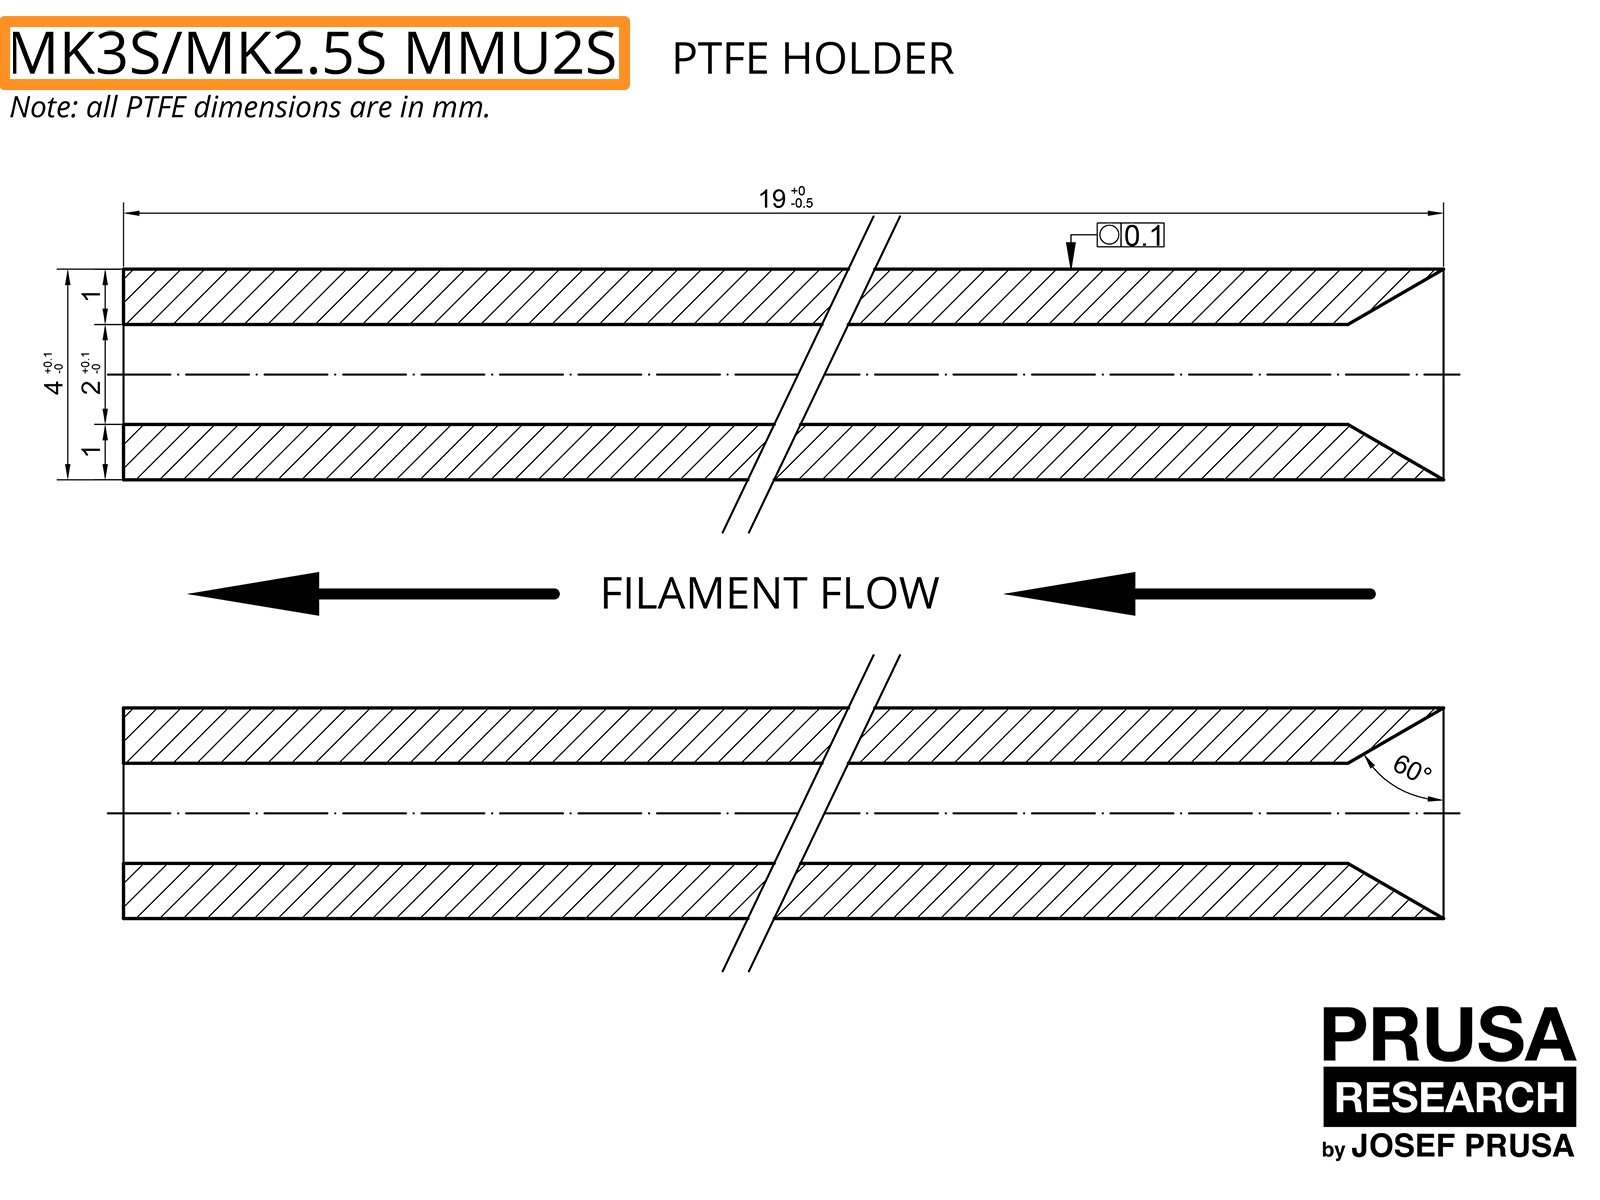 PTFE pour le MMU2S des MK3S/MK2.5S (partie 1)